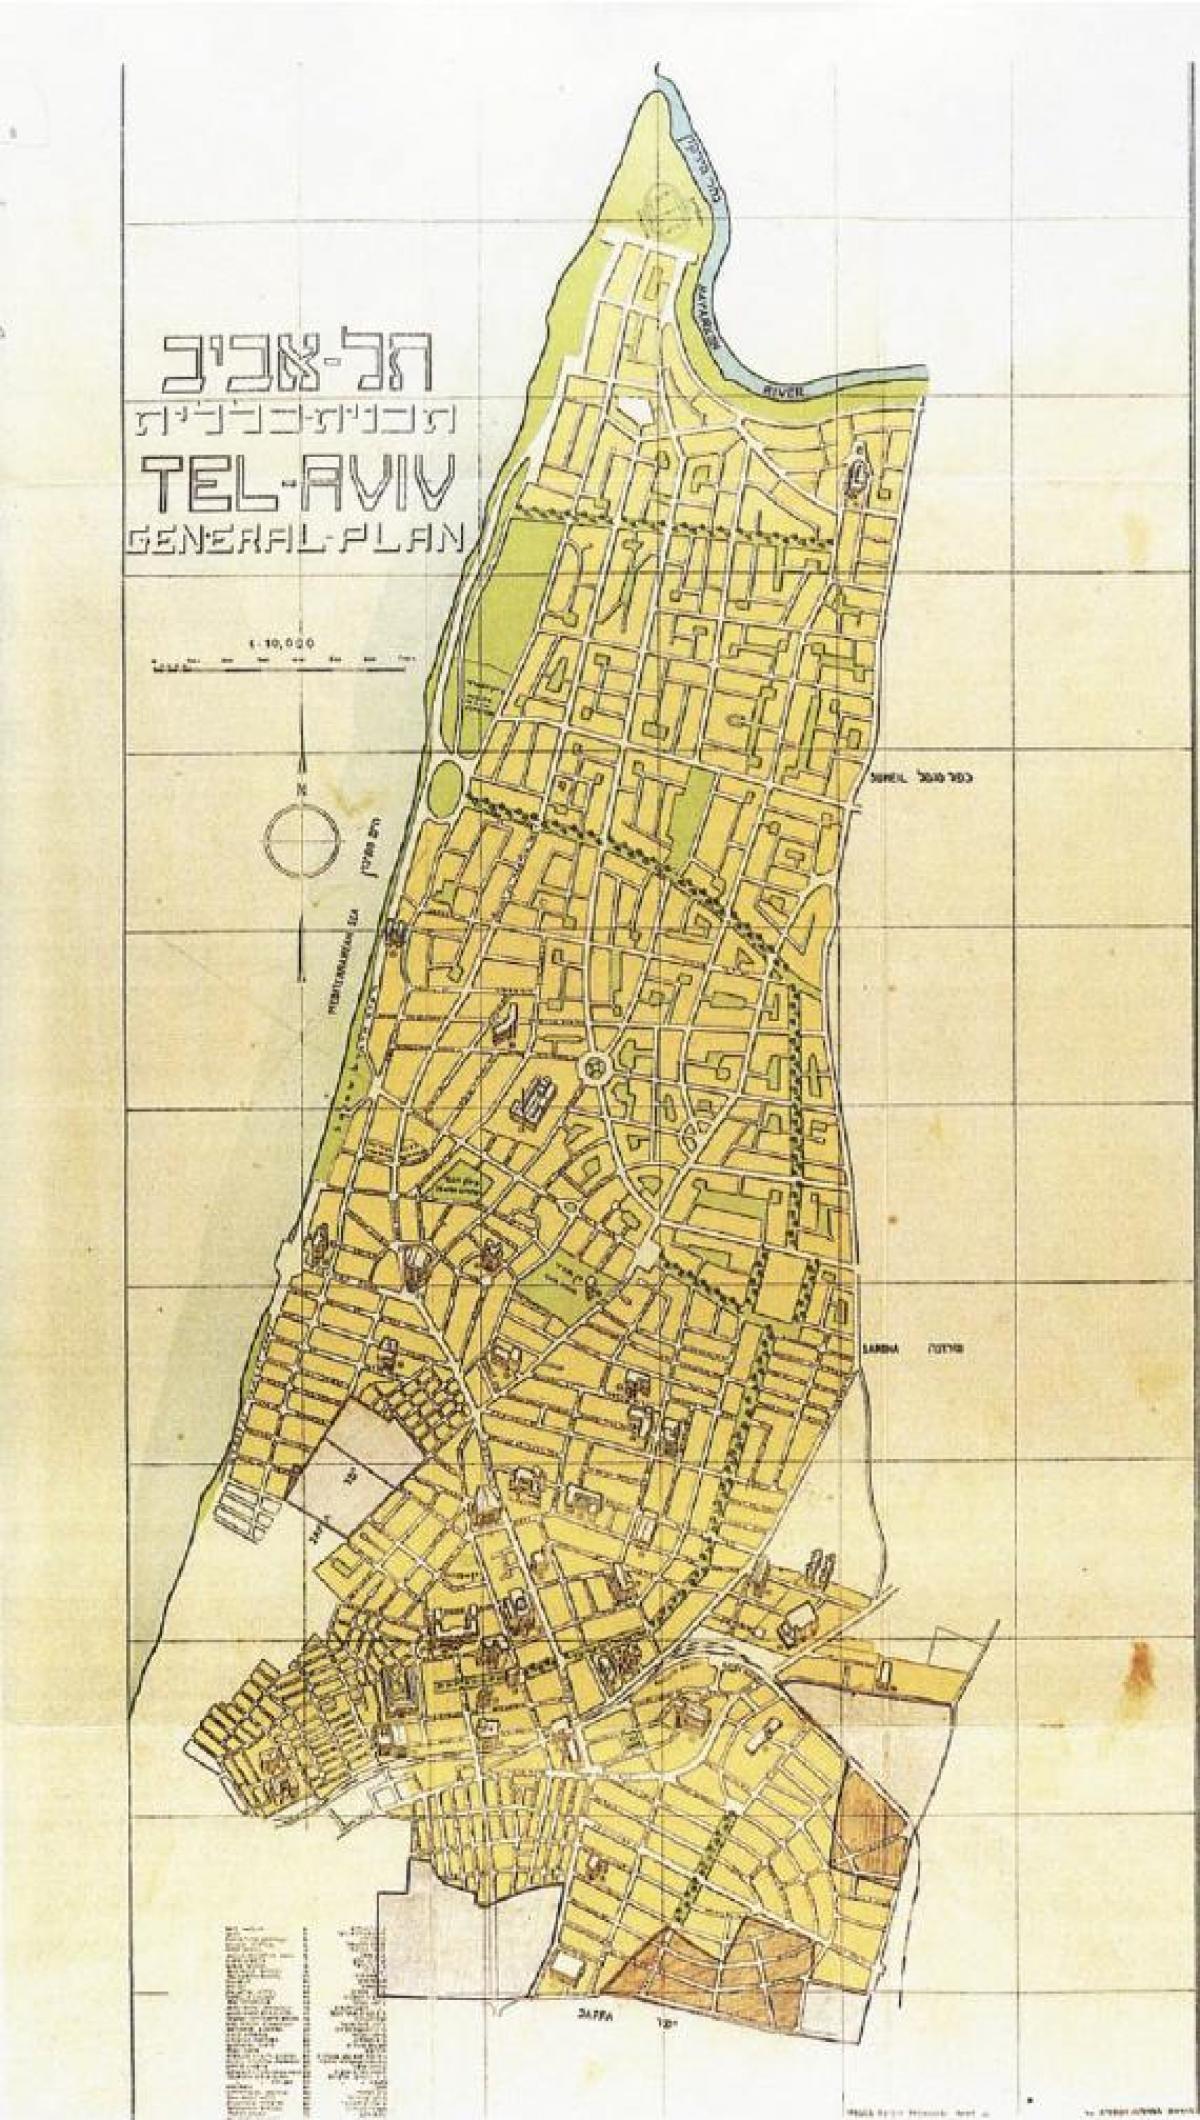 Mapa antigo de Telavive